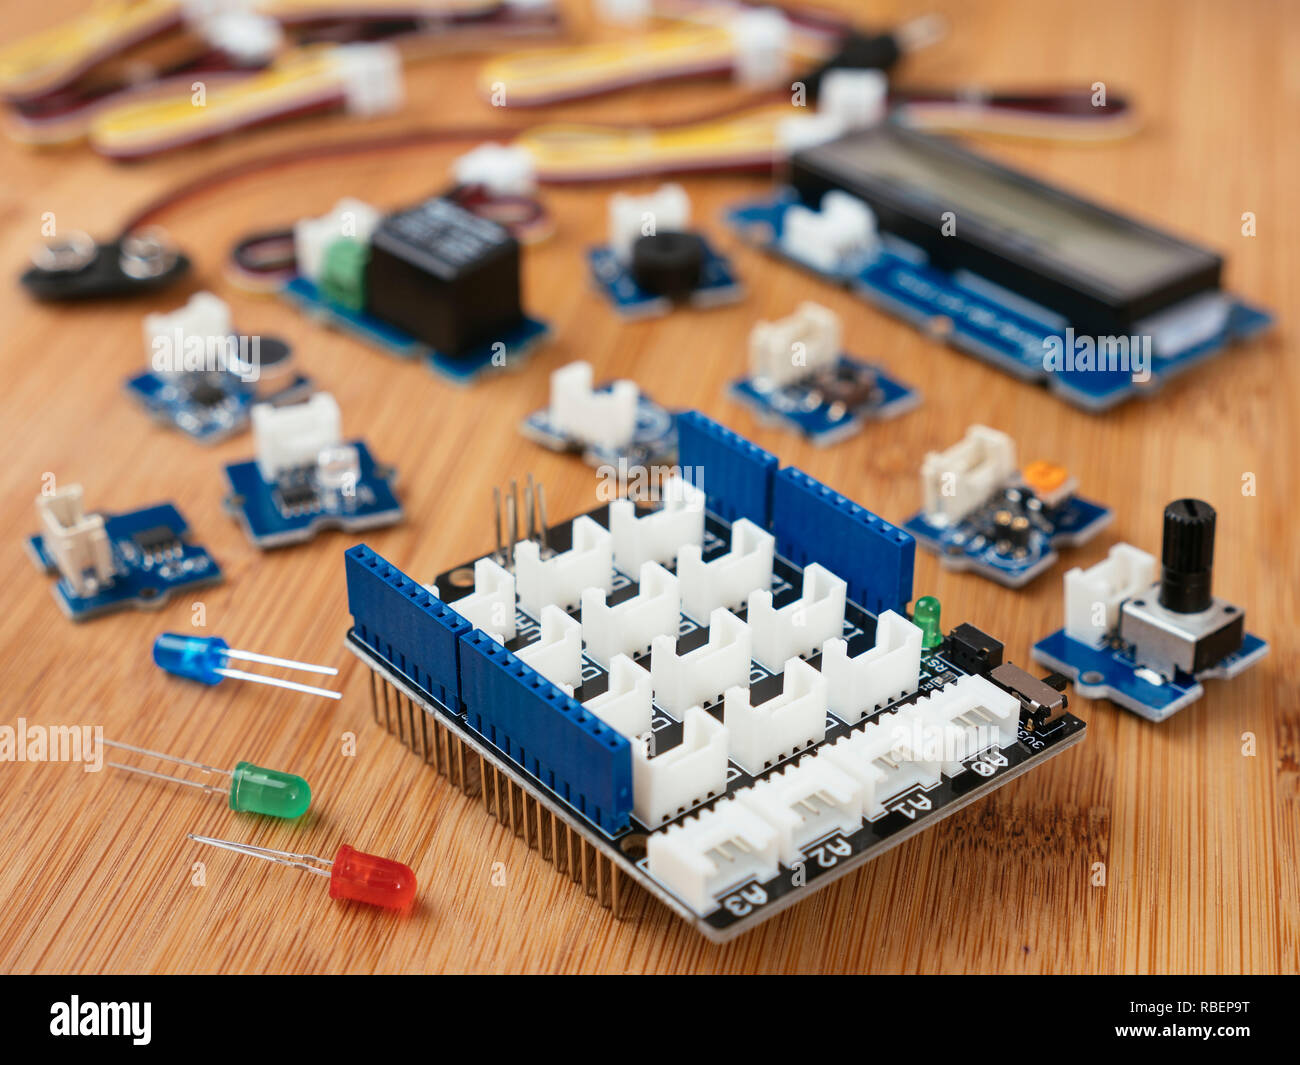 Grove Modul Starter Kit für Arduino mit einer Auswahl verschiedener Module und ein Schild. Stockfoto